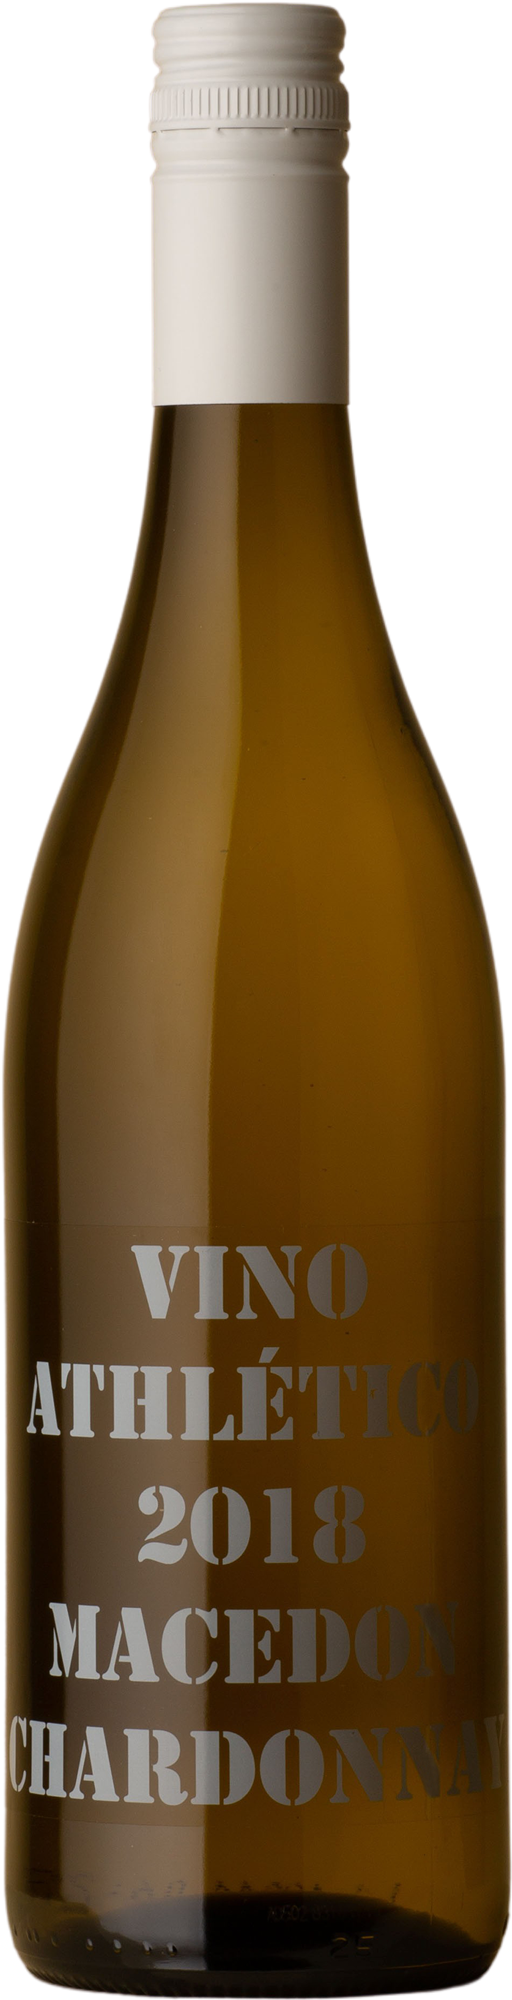 Athletes of Wine - Vino Athlético Chardonnay 2018 White Wine